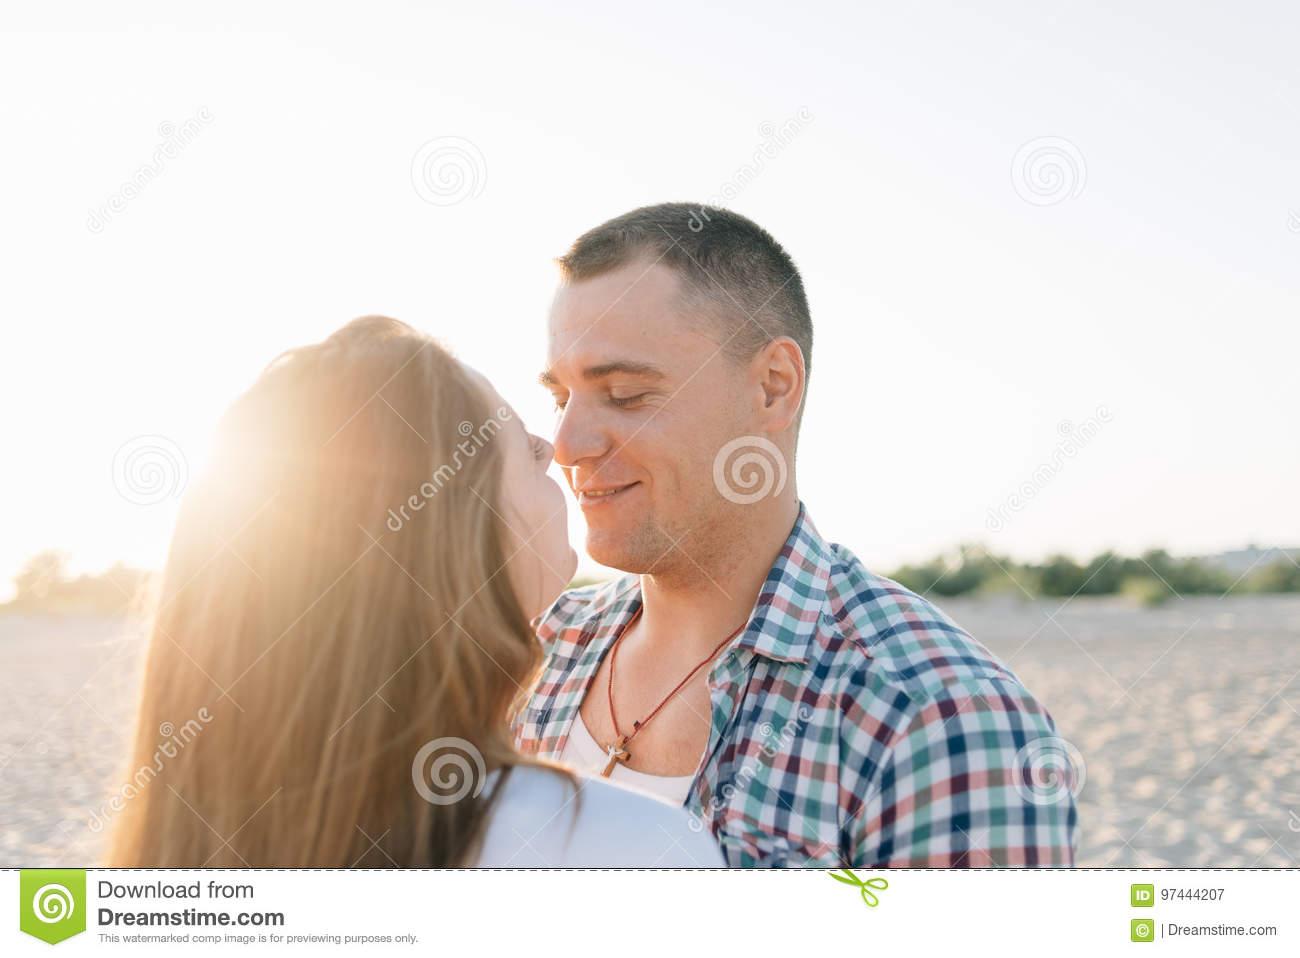 Guy girl kiss after facial